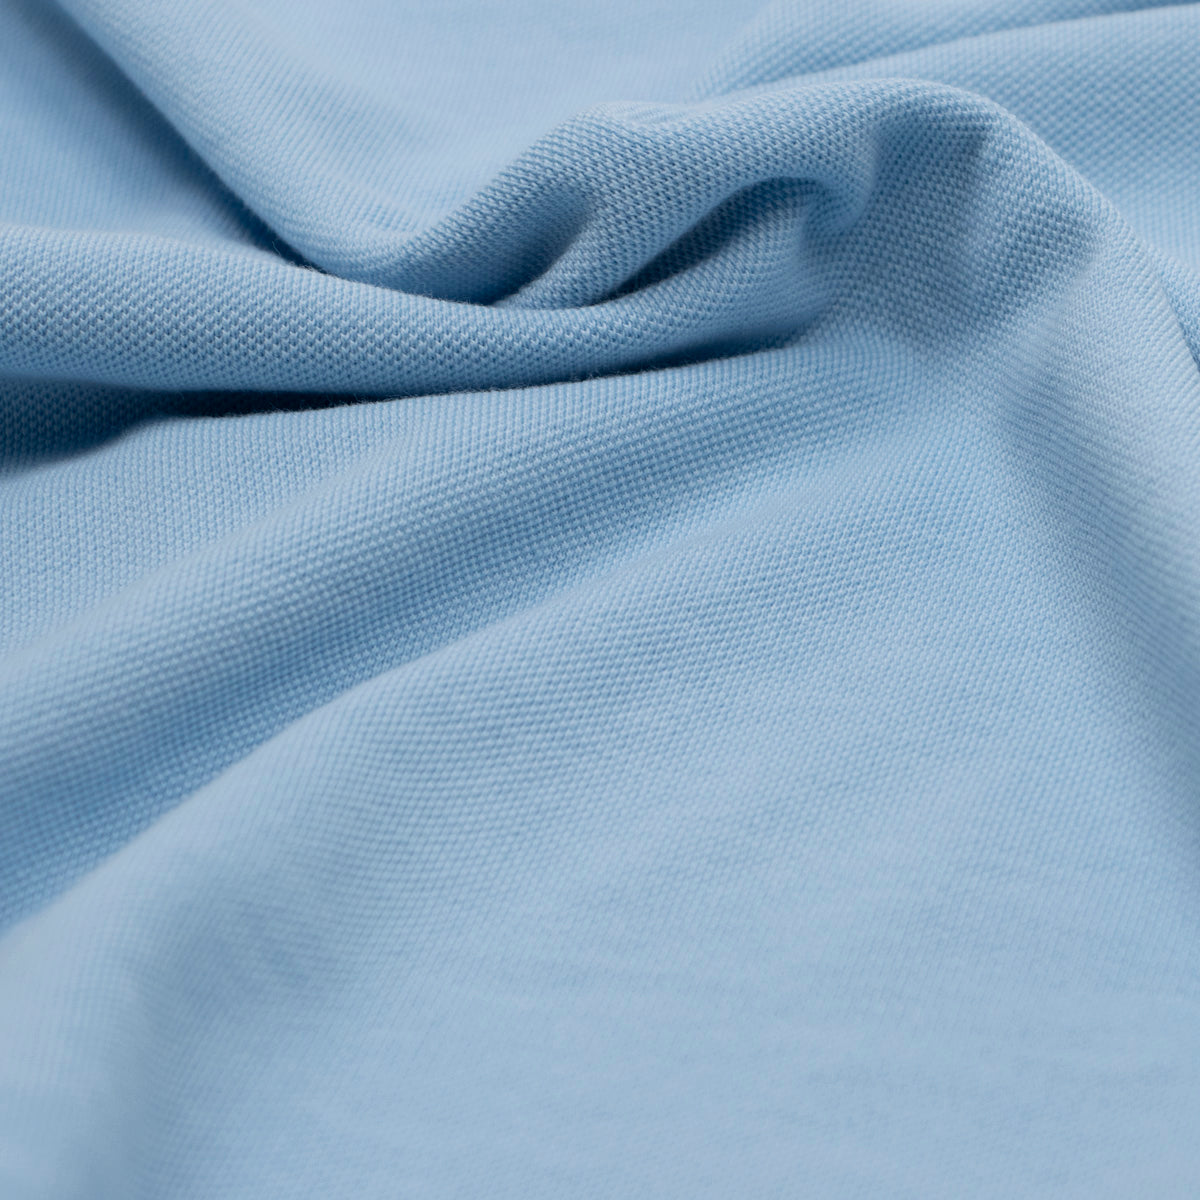 Light Blue 100% Cotton Short Sleeve Polo Shirt  Robert Old   